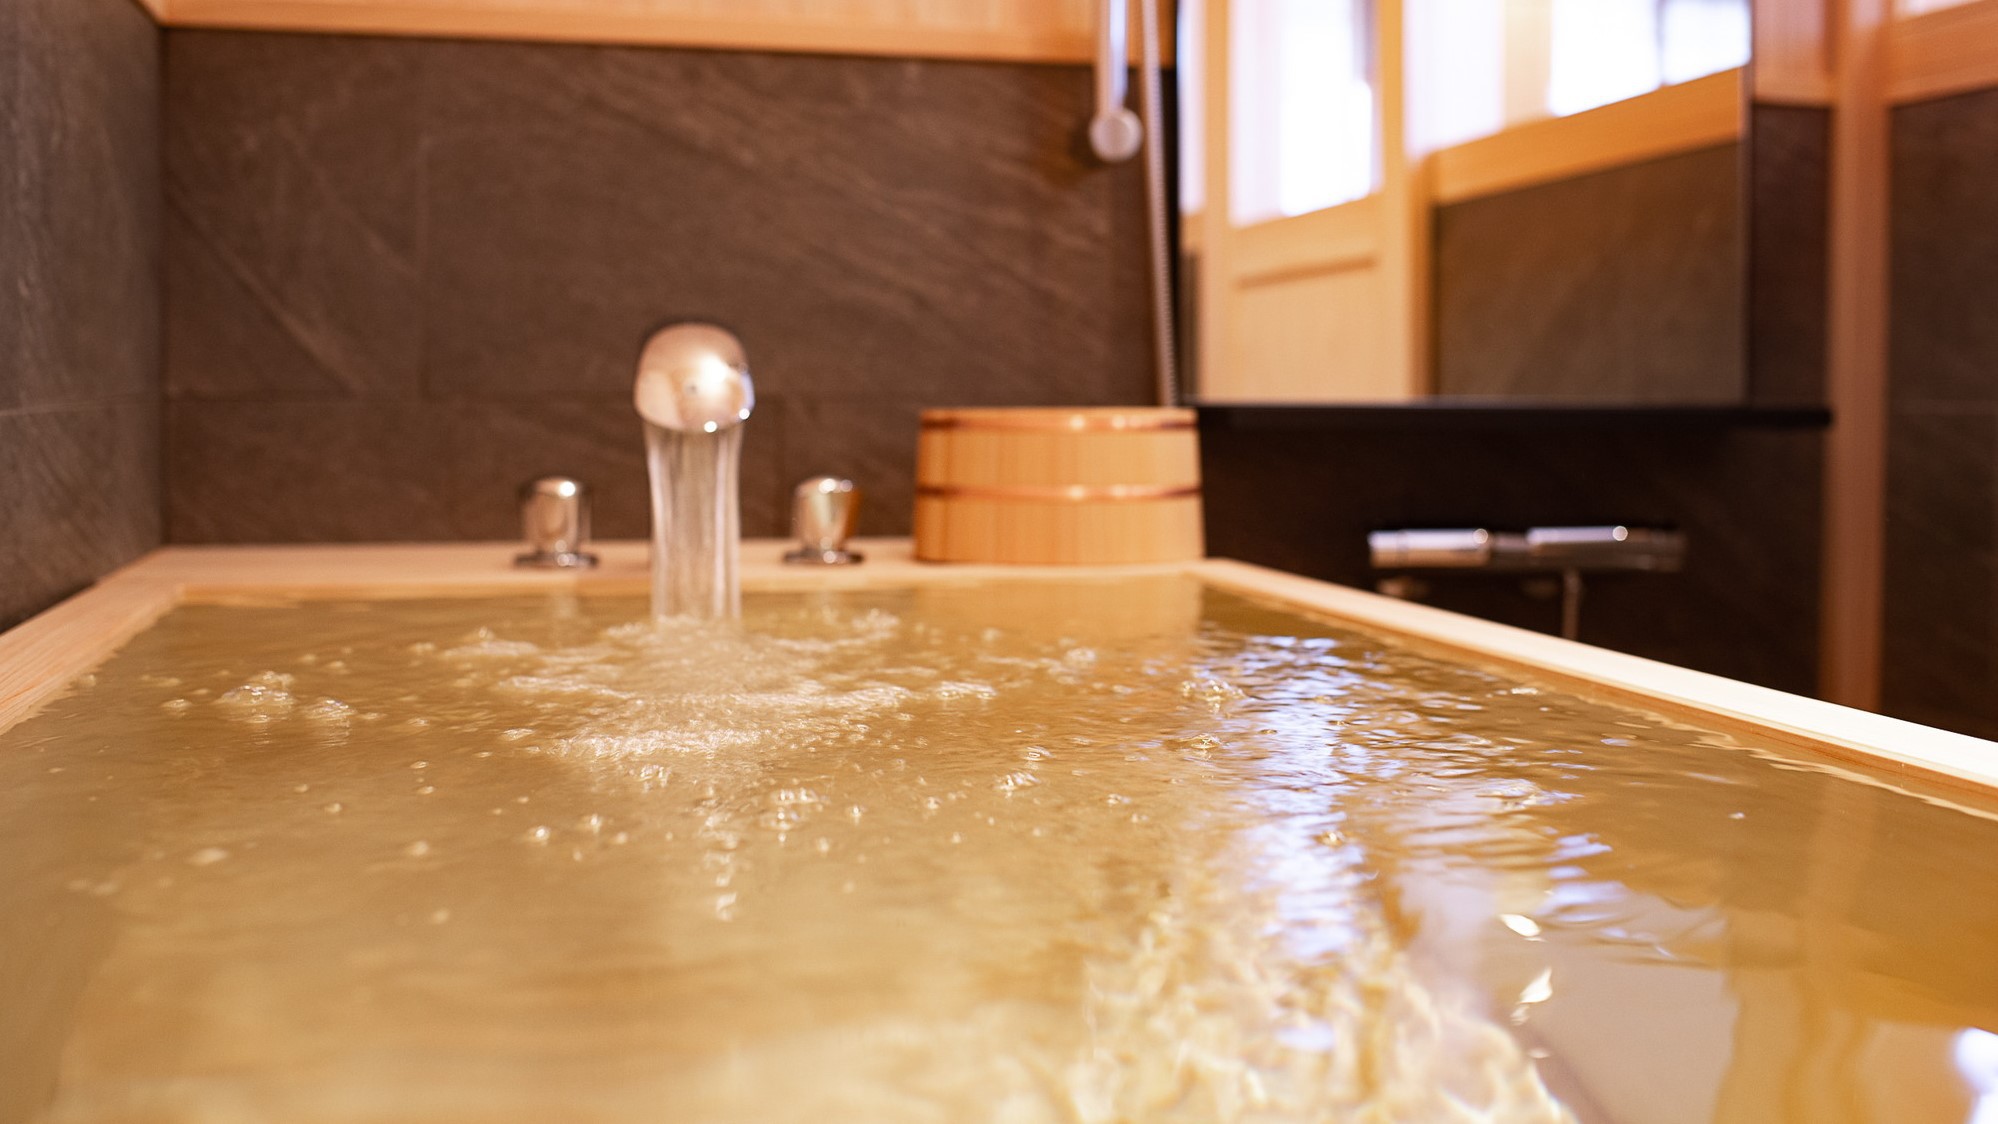 【お部屋のこだわり】お部屋に職人さん手作りの檜風呂をご用意。広々とした湯舟で木の香りに包まれながら、